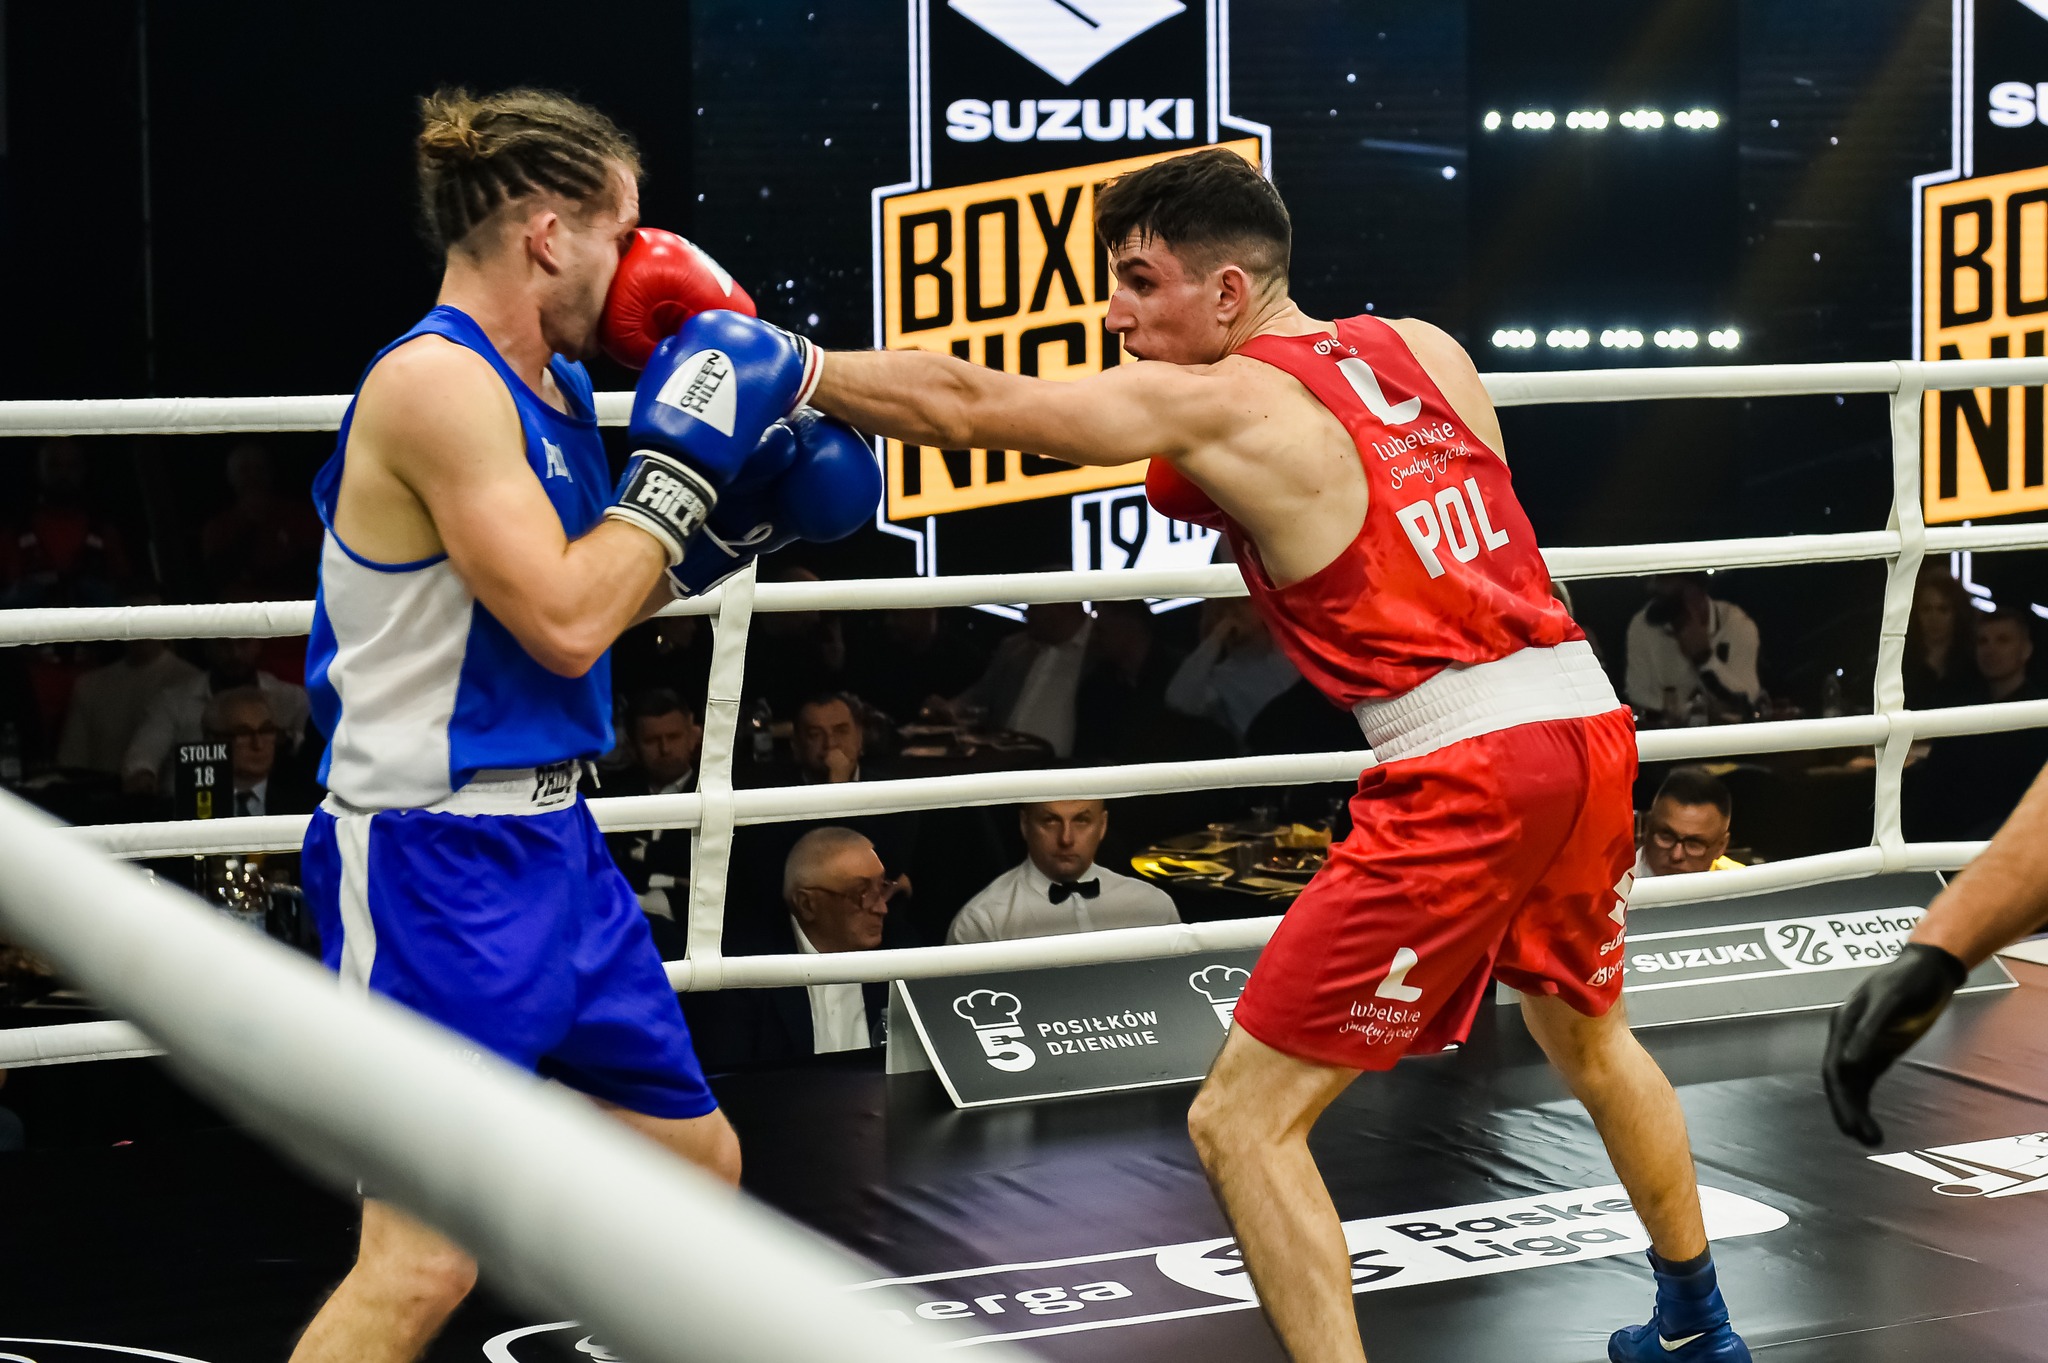  Suzuki Boxing Night 25: Michał Dawiec – szansa poprawienia rekord